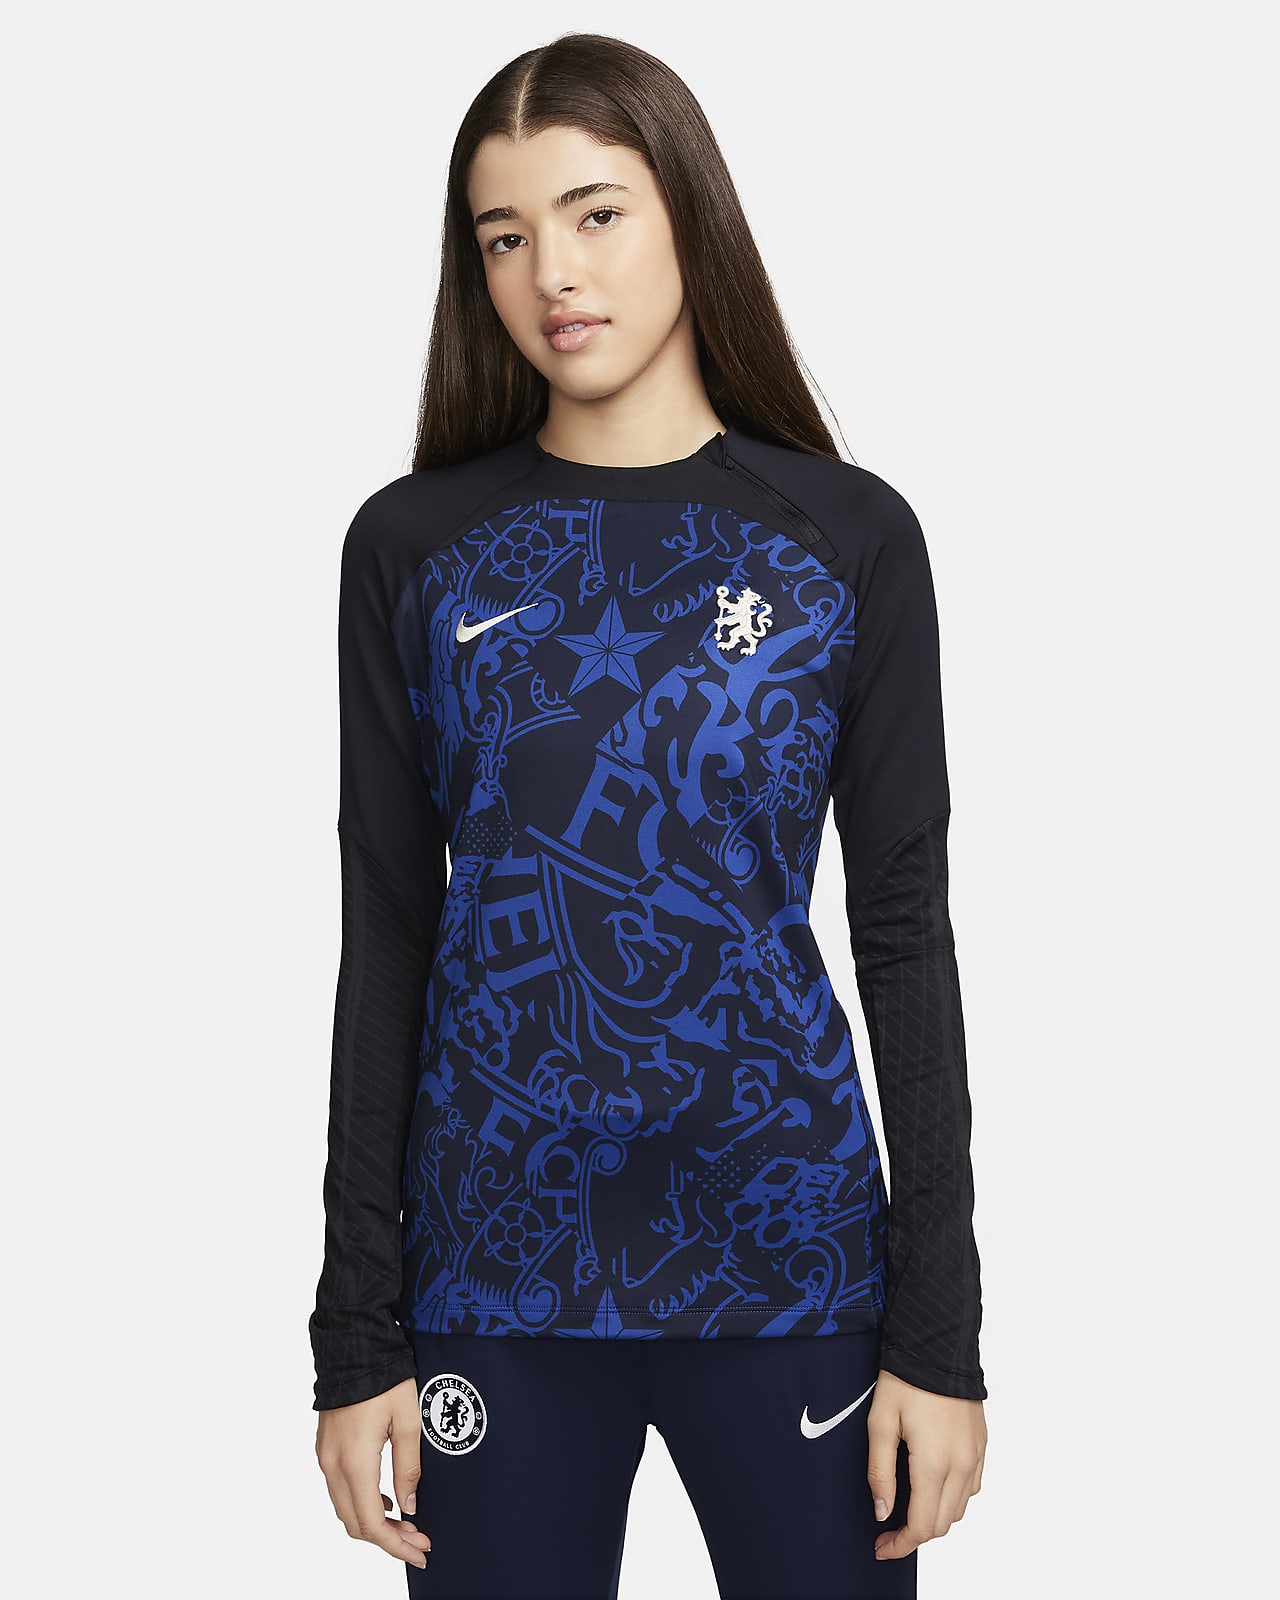 Chelsea FC Strike Nike Dri-FIT kerek nyakkivágású női edzőfelső futballhoz